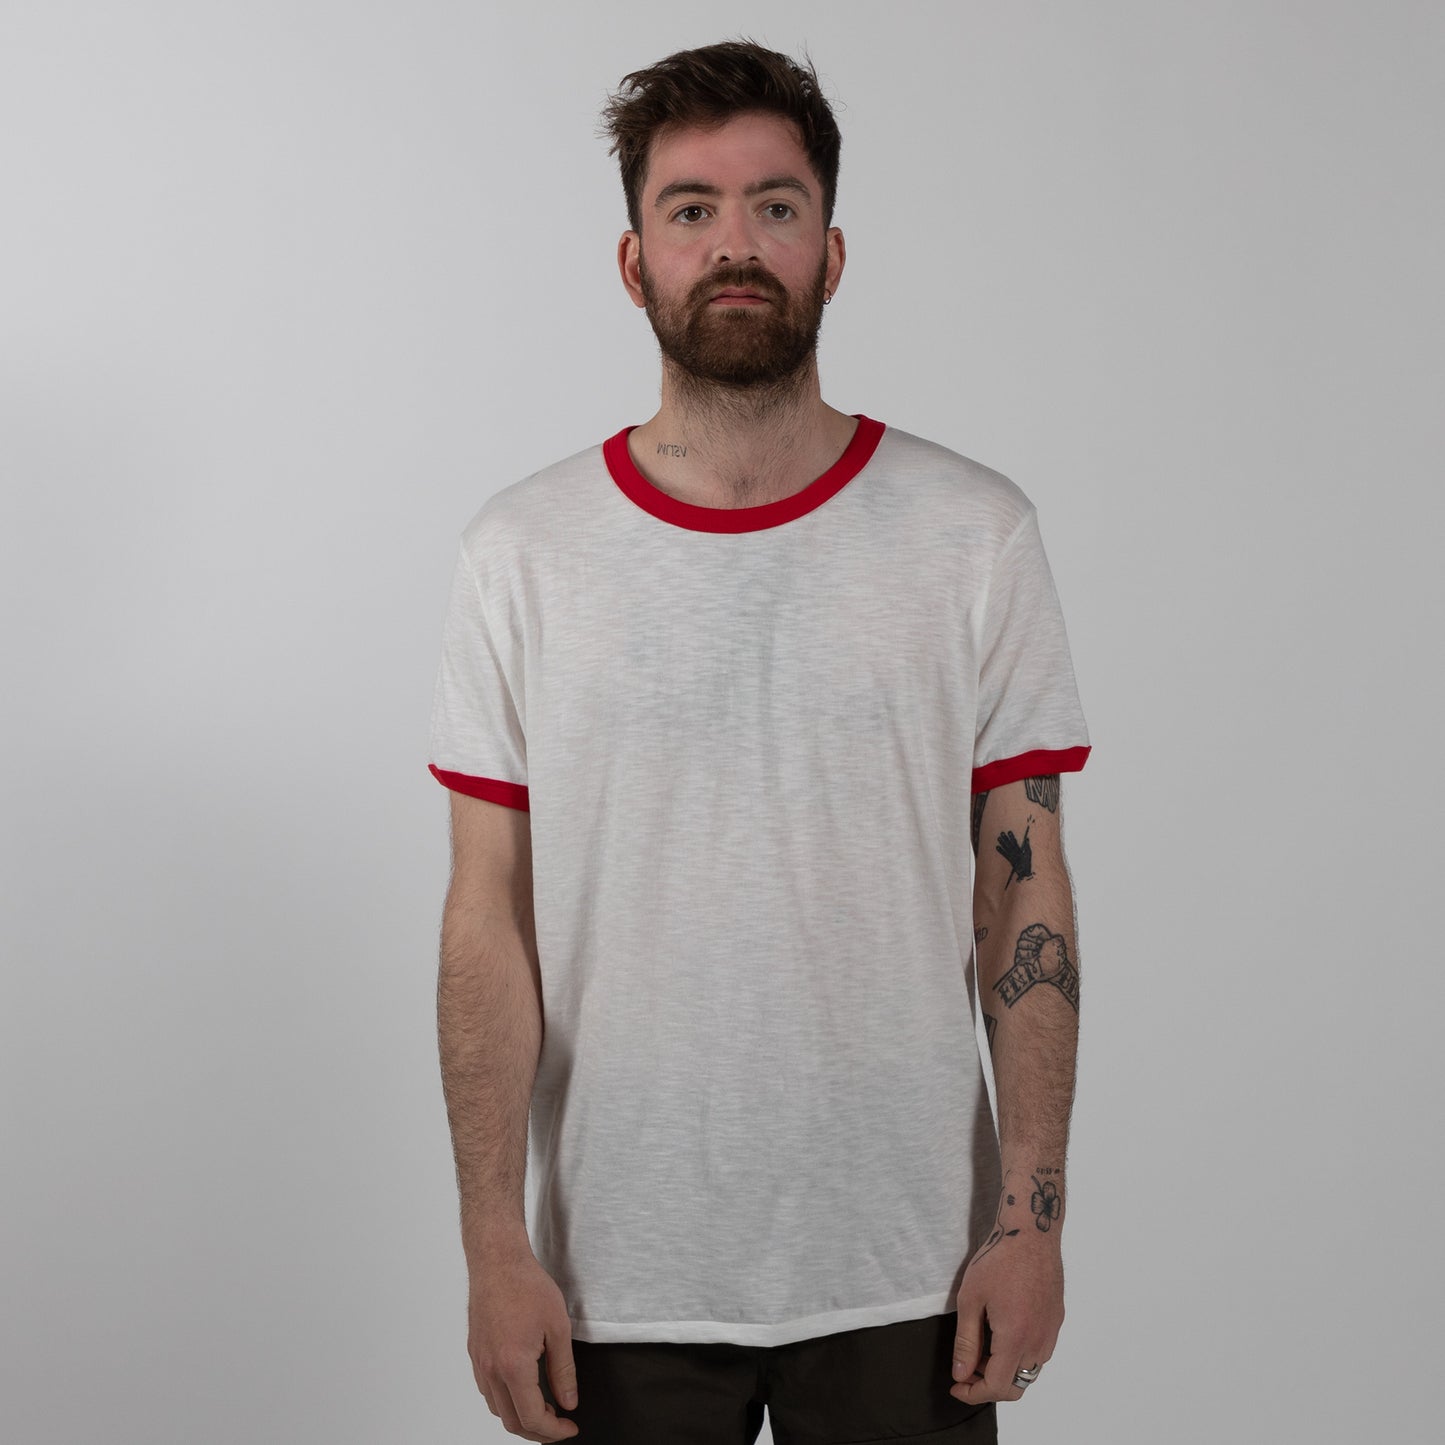 Velva Sheen Ringer T-Shirt - White/Red